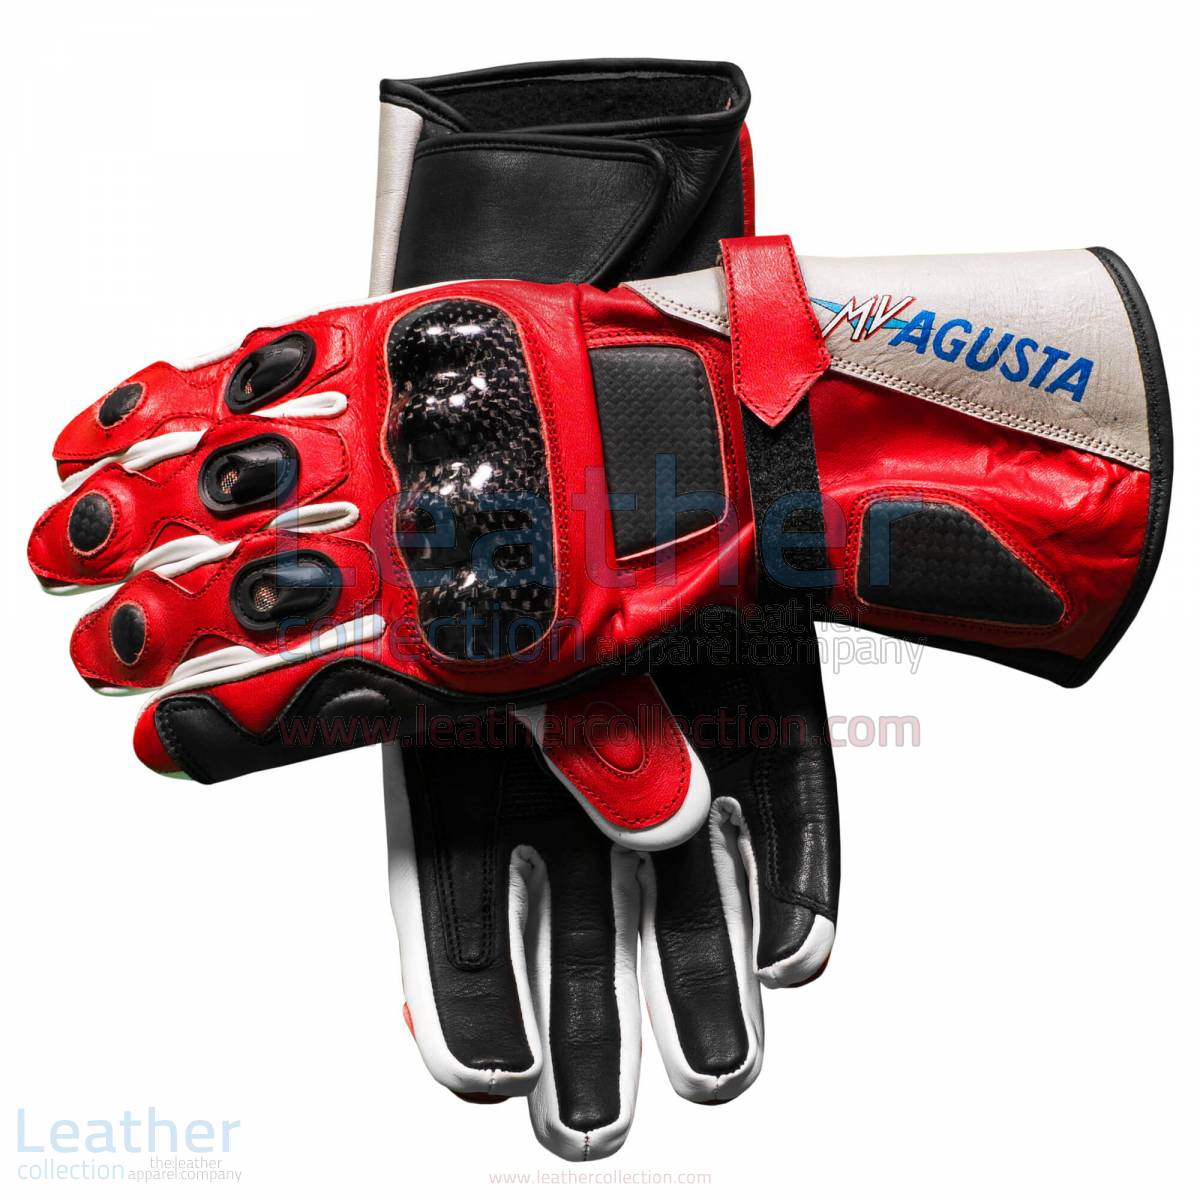 mv agusta crc carbon racing gloves